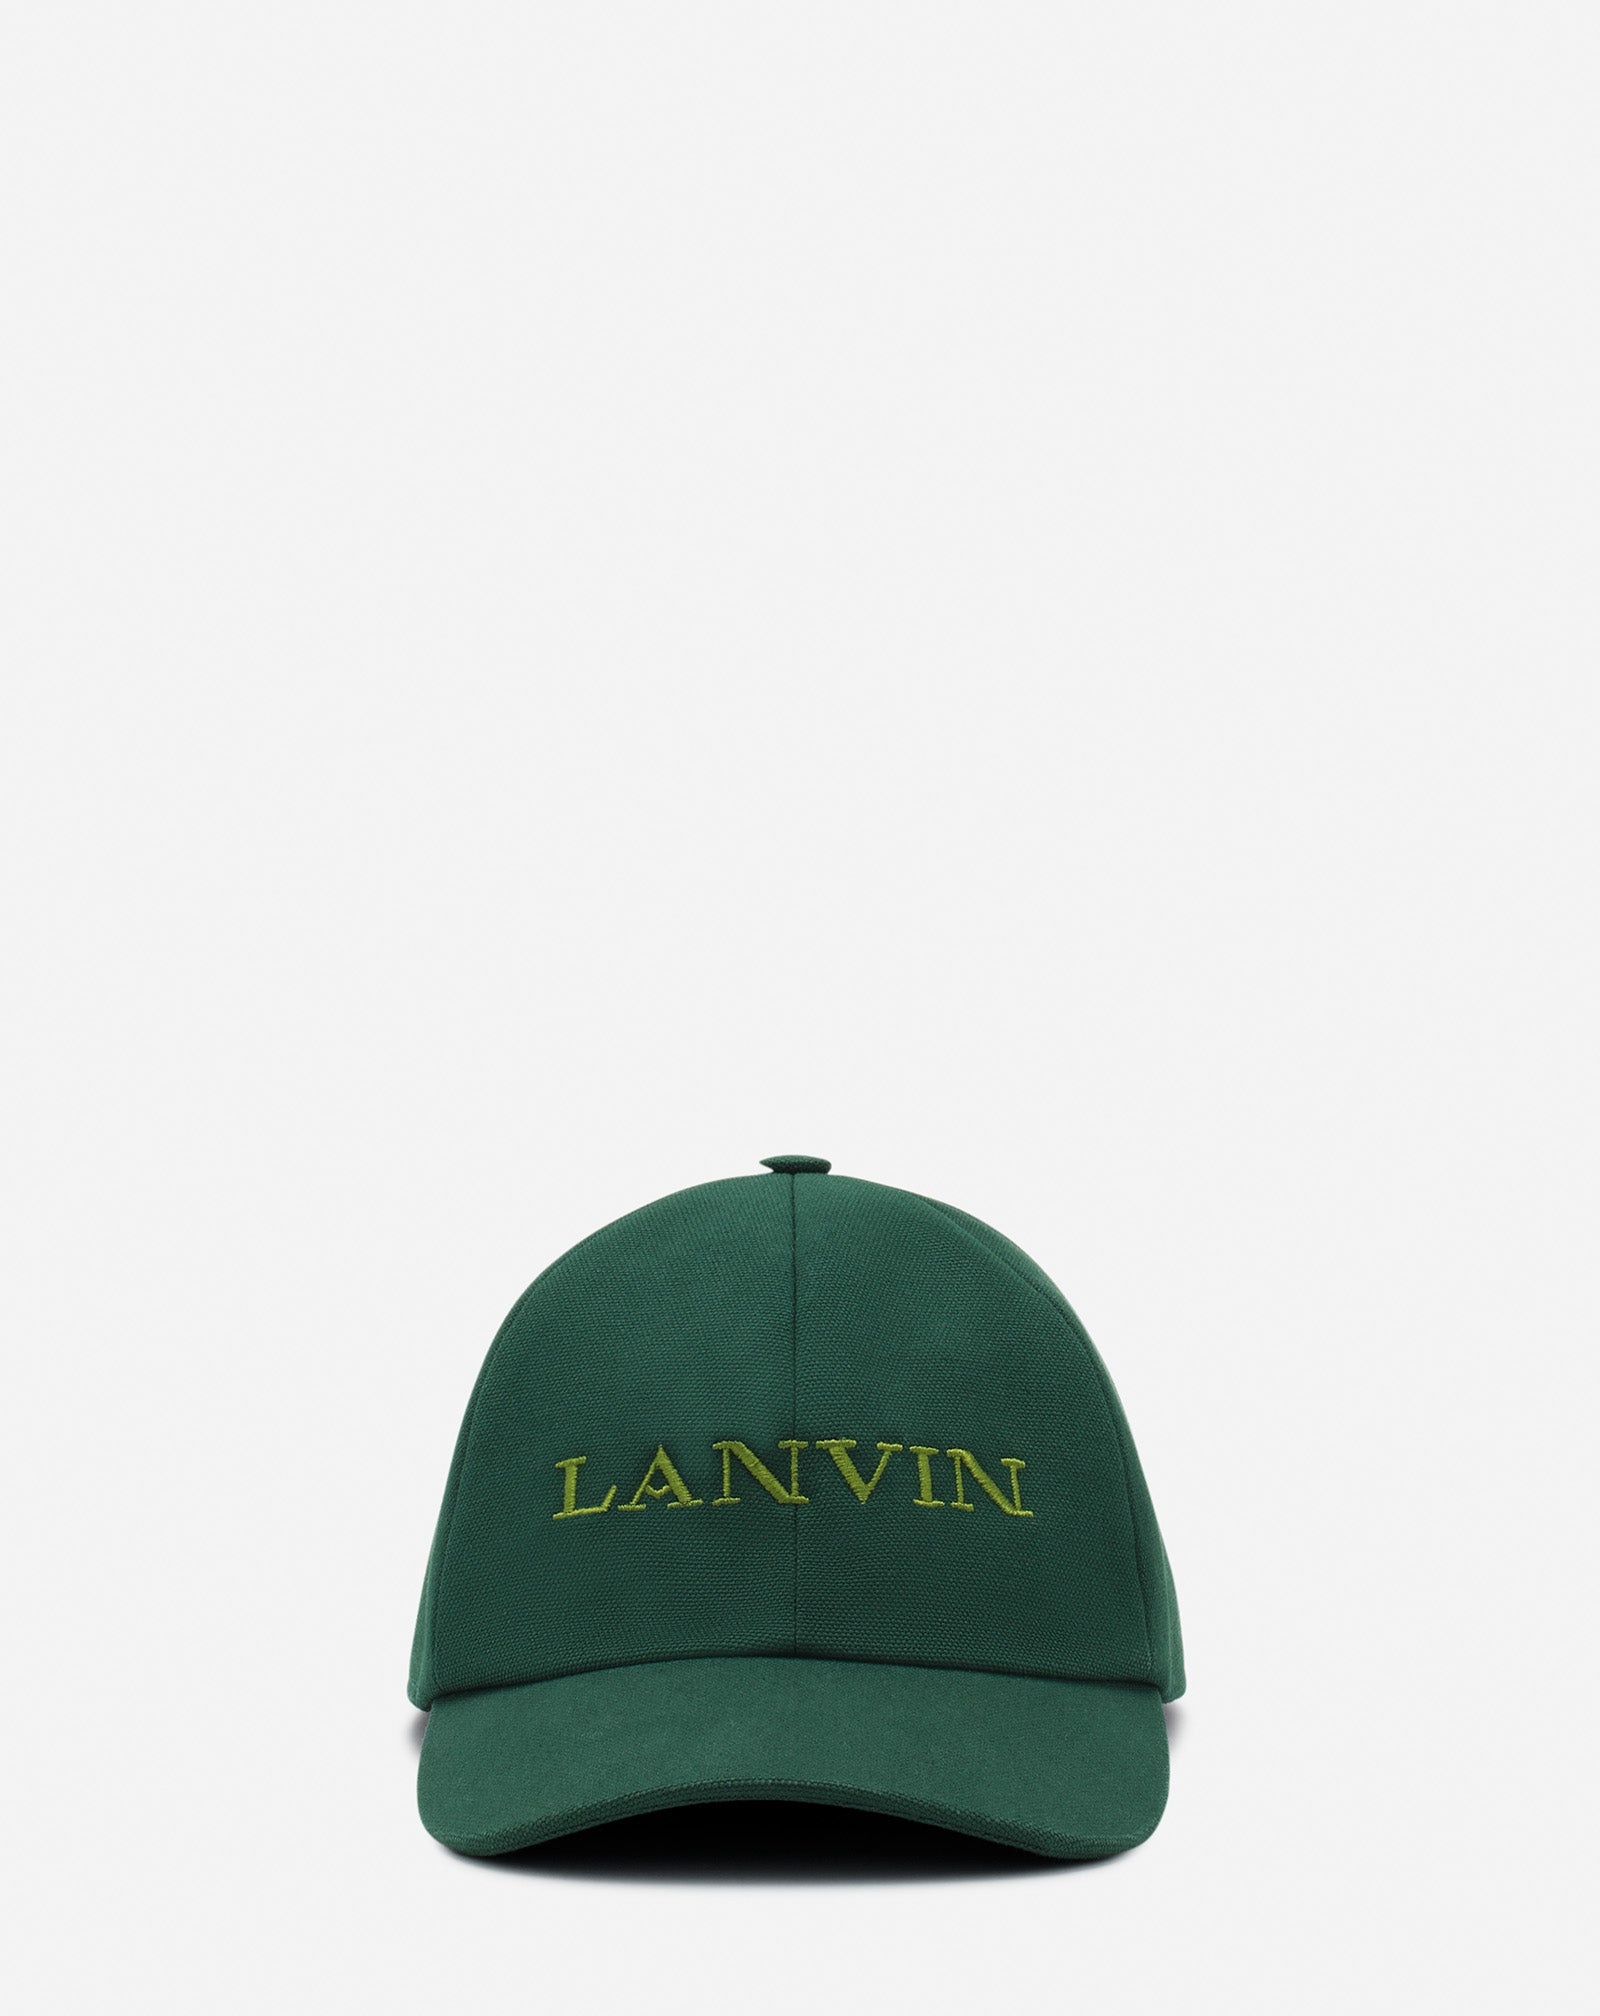 LANVIN COTTON CAP - 1